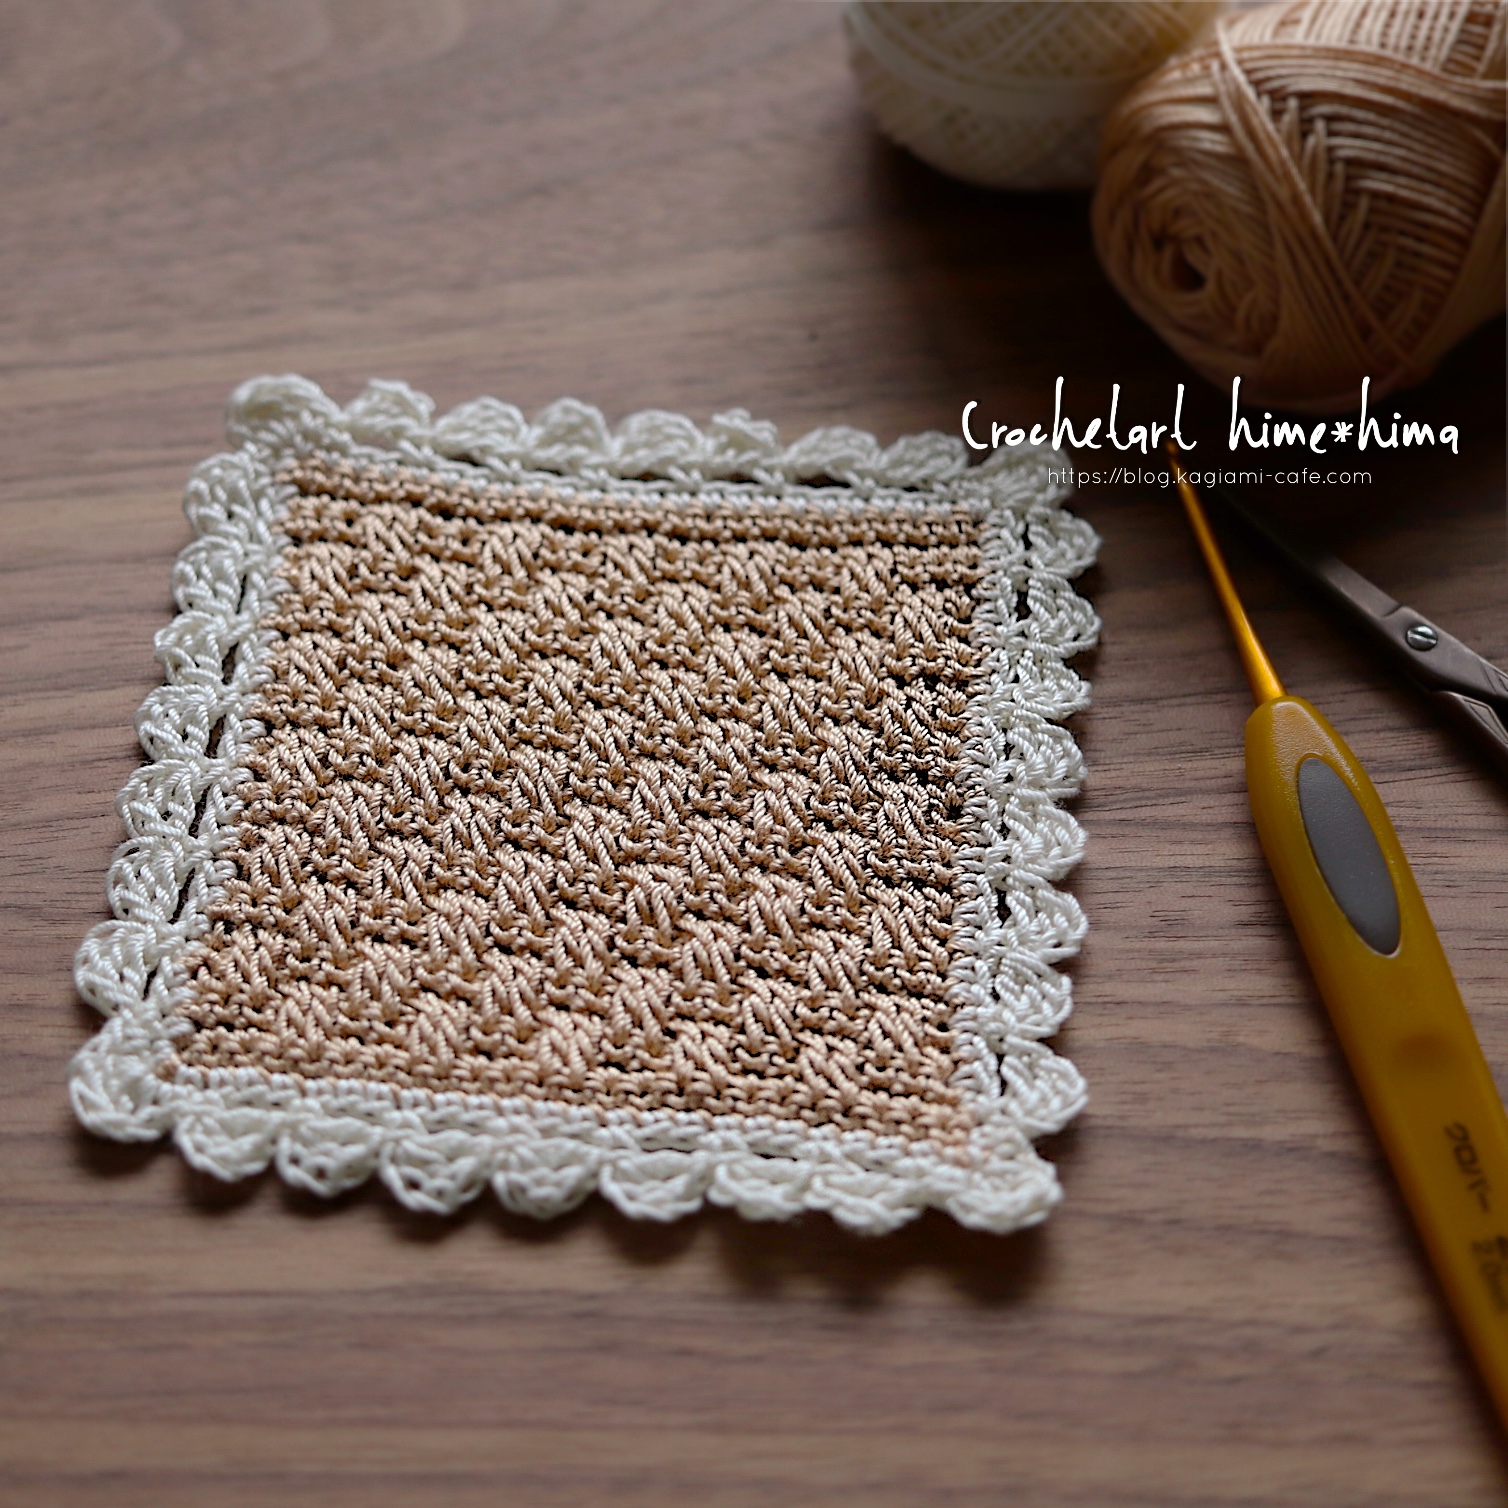 かぎ針編み レンガ模様のドイリーの編み図 かぎ針編みとレース編みの無料編み図サイト By Hime Hima